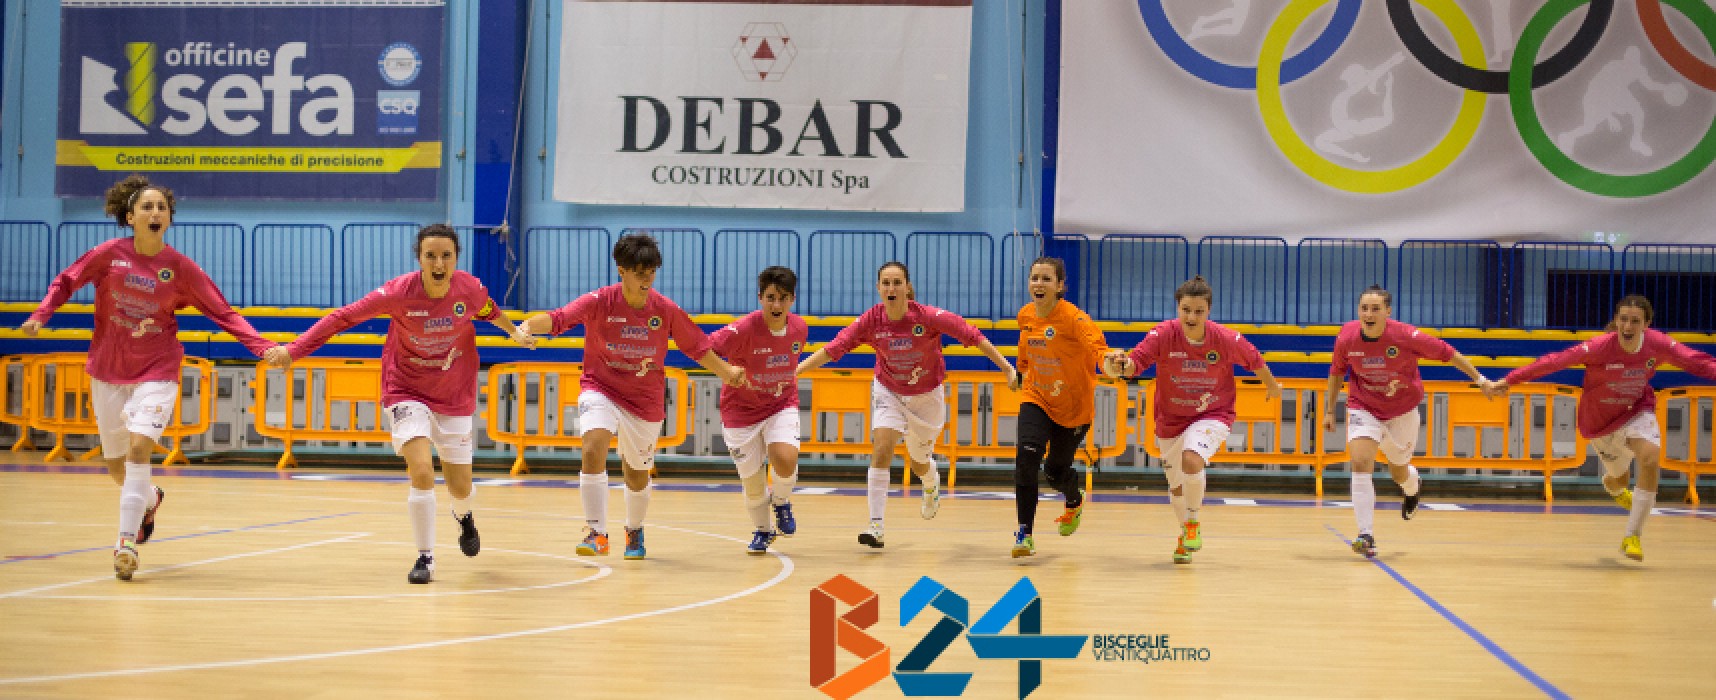 Futsal Bisceglie, la compagine femminile centra al primo anno la finale di Coppa Puglia